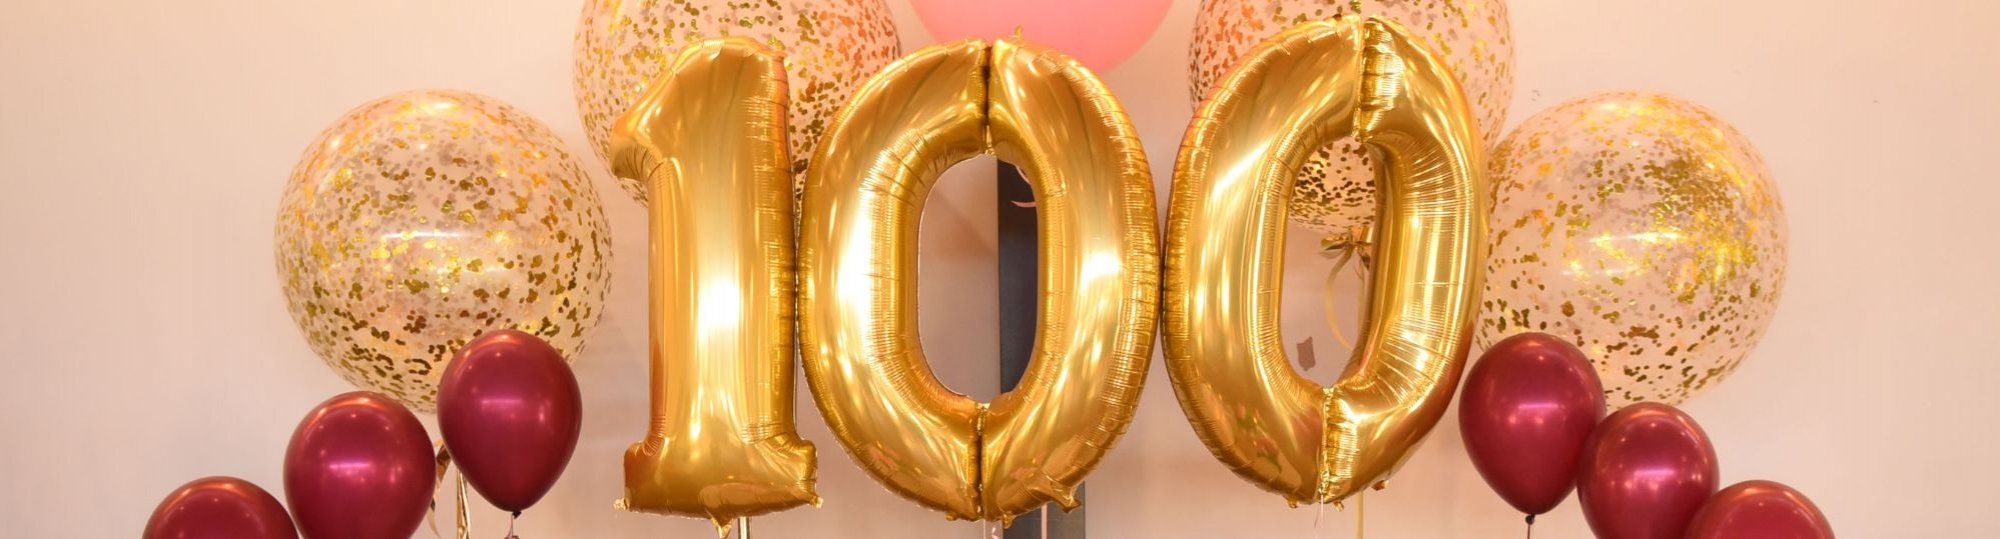 Sheila Turns 100!